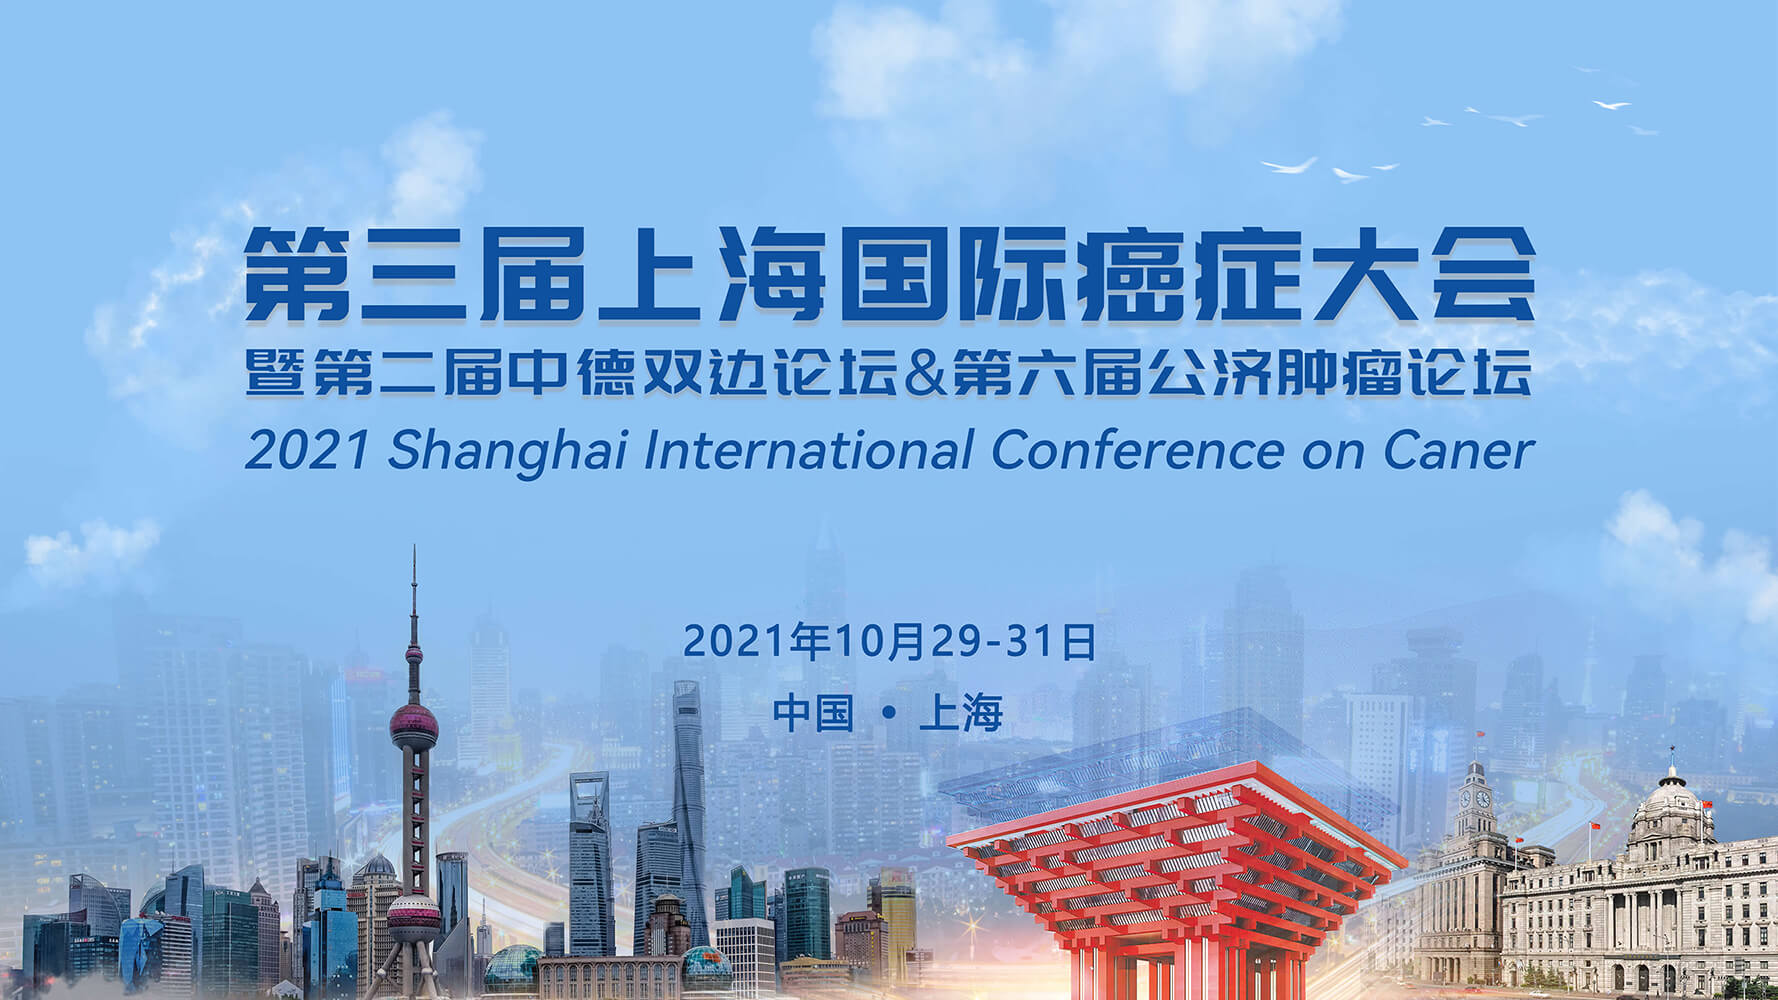 吉凯检验邀您参加2021第三届上海国际癌症大会